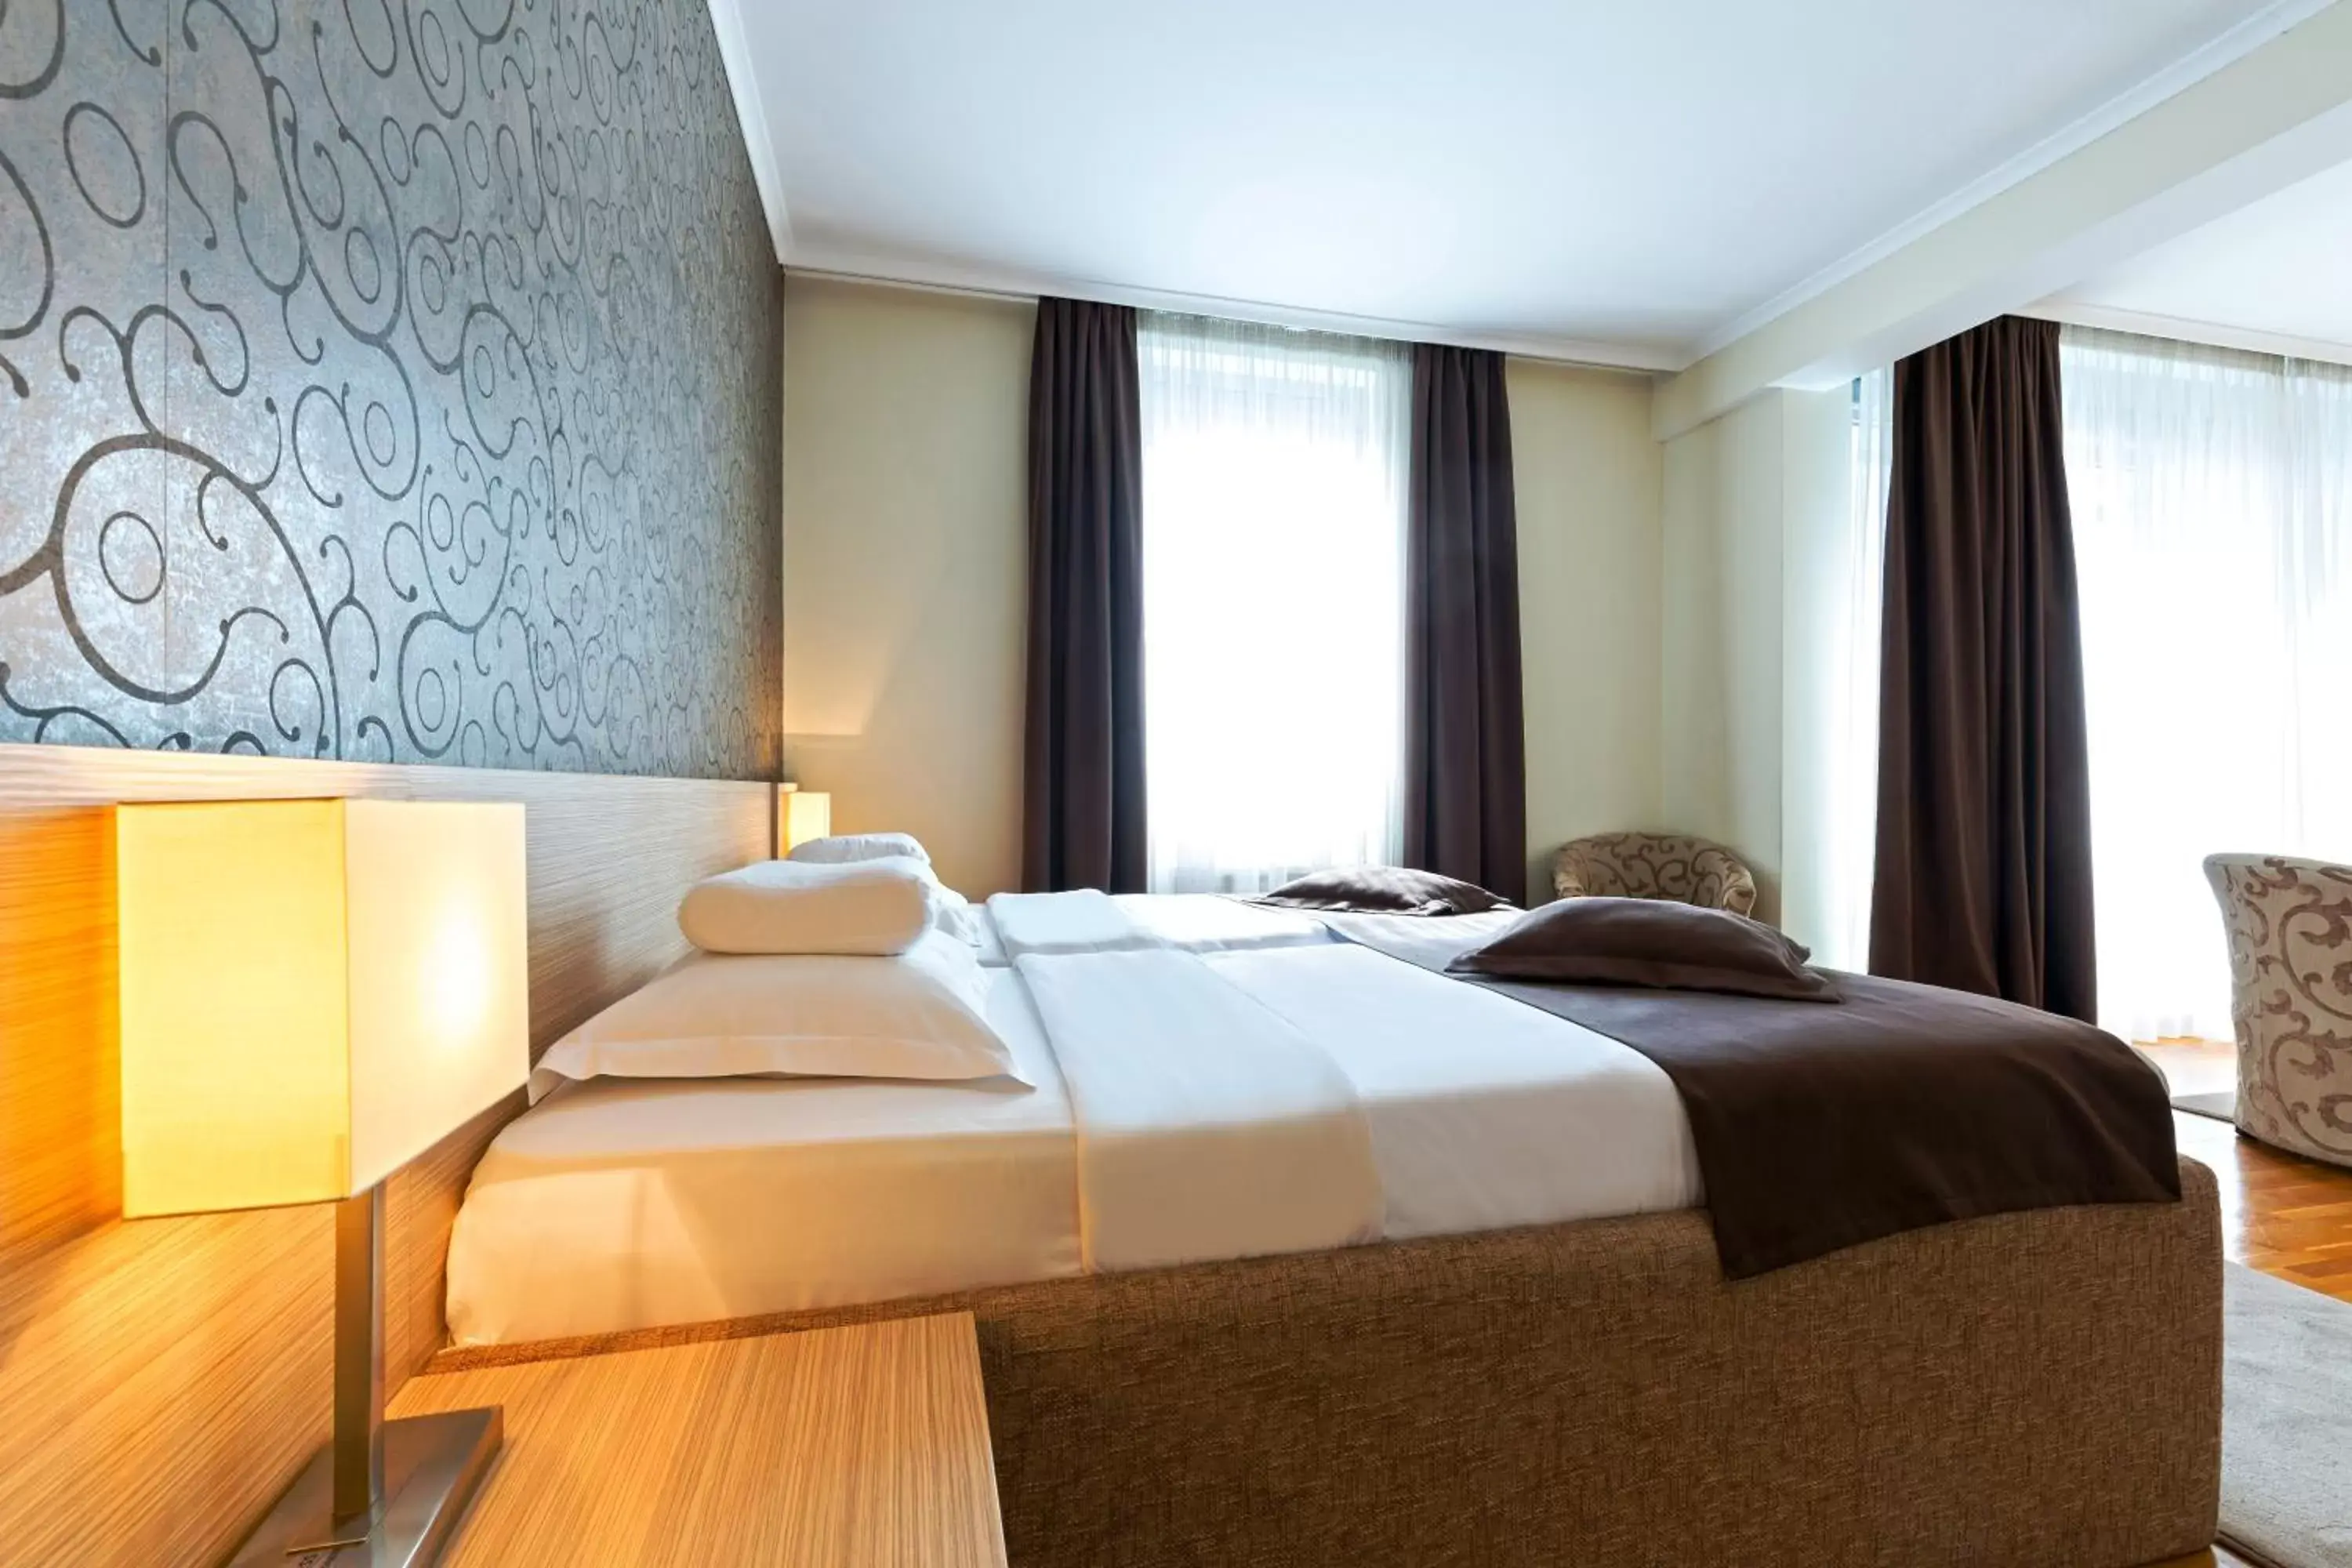 Bed, Room Photo in Garni Hotel Nevski